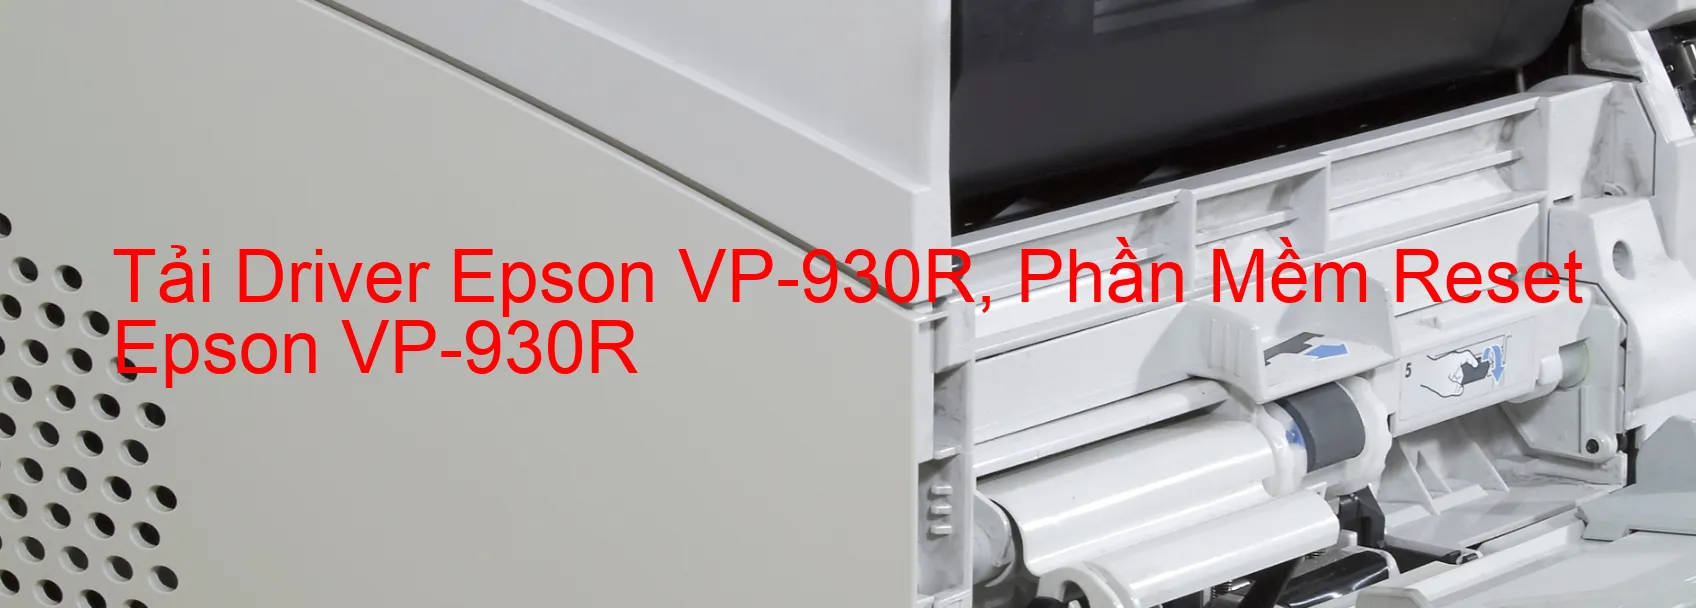 Driver Epson VP-930R, Phần Mềm Reset Epson VP-930R